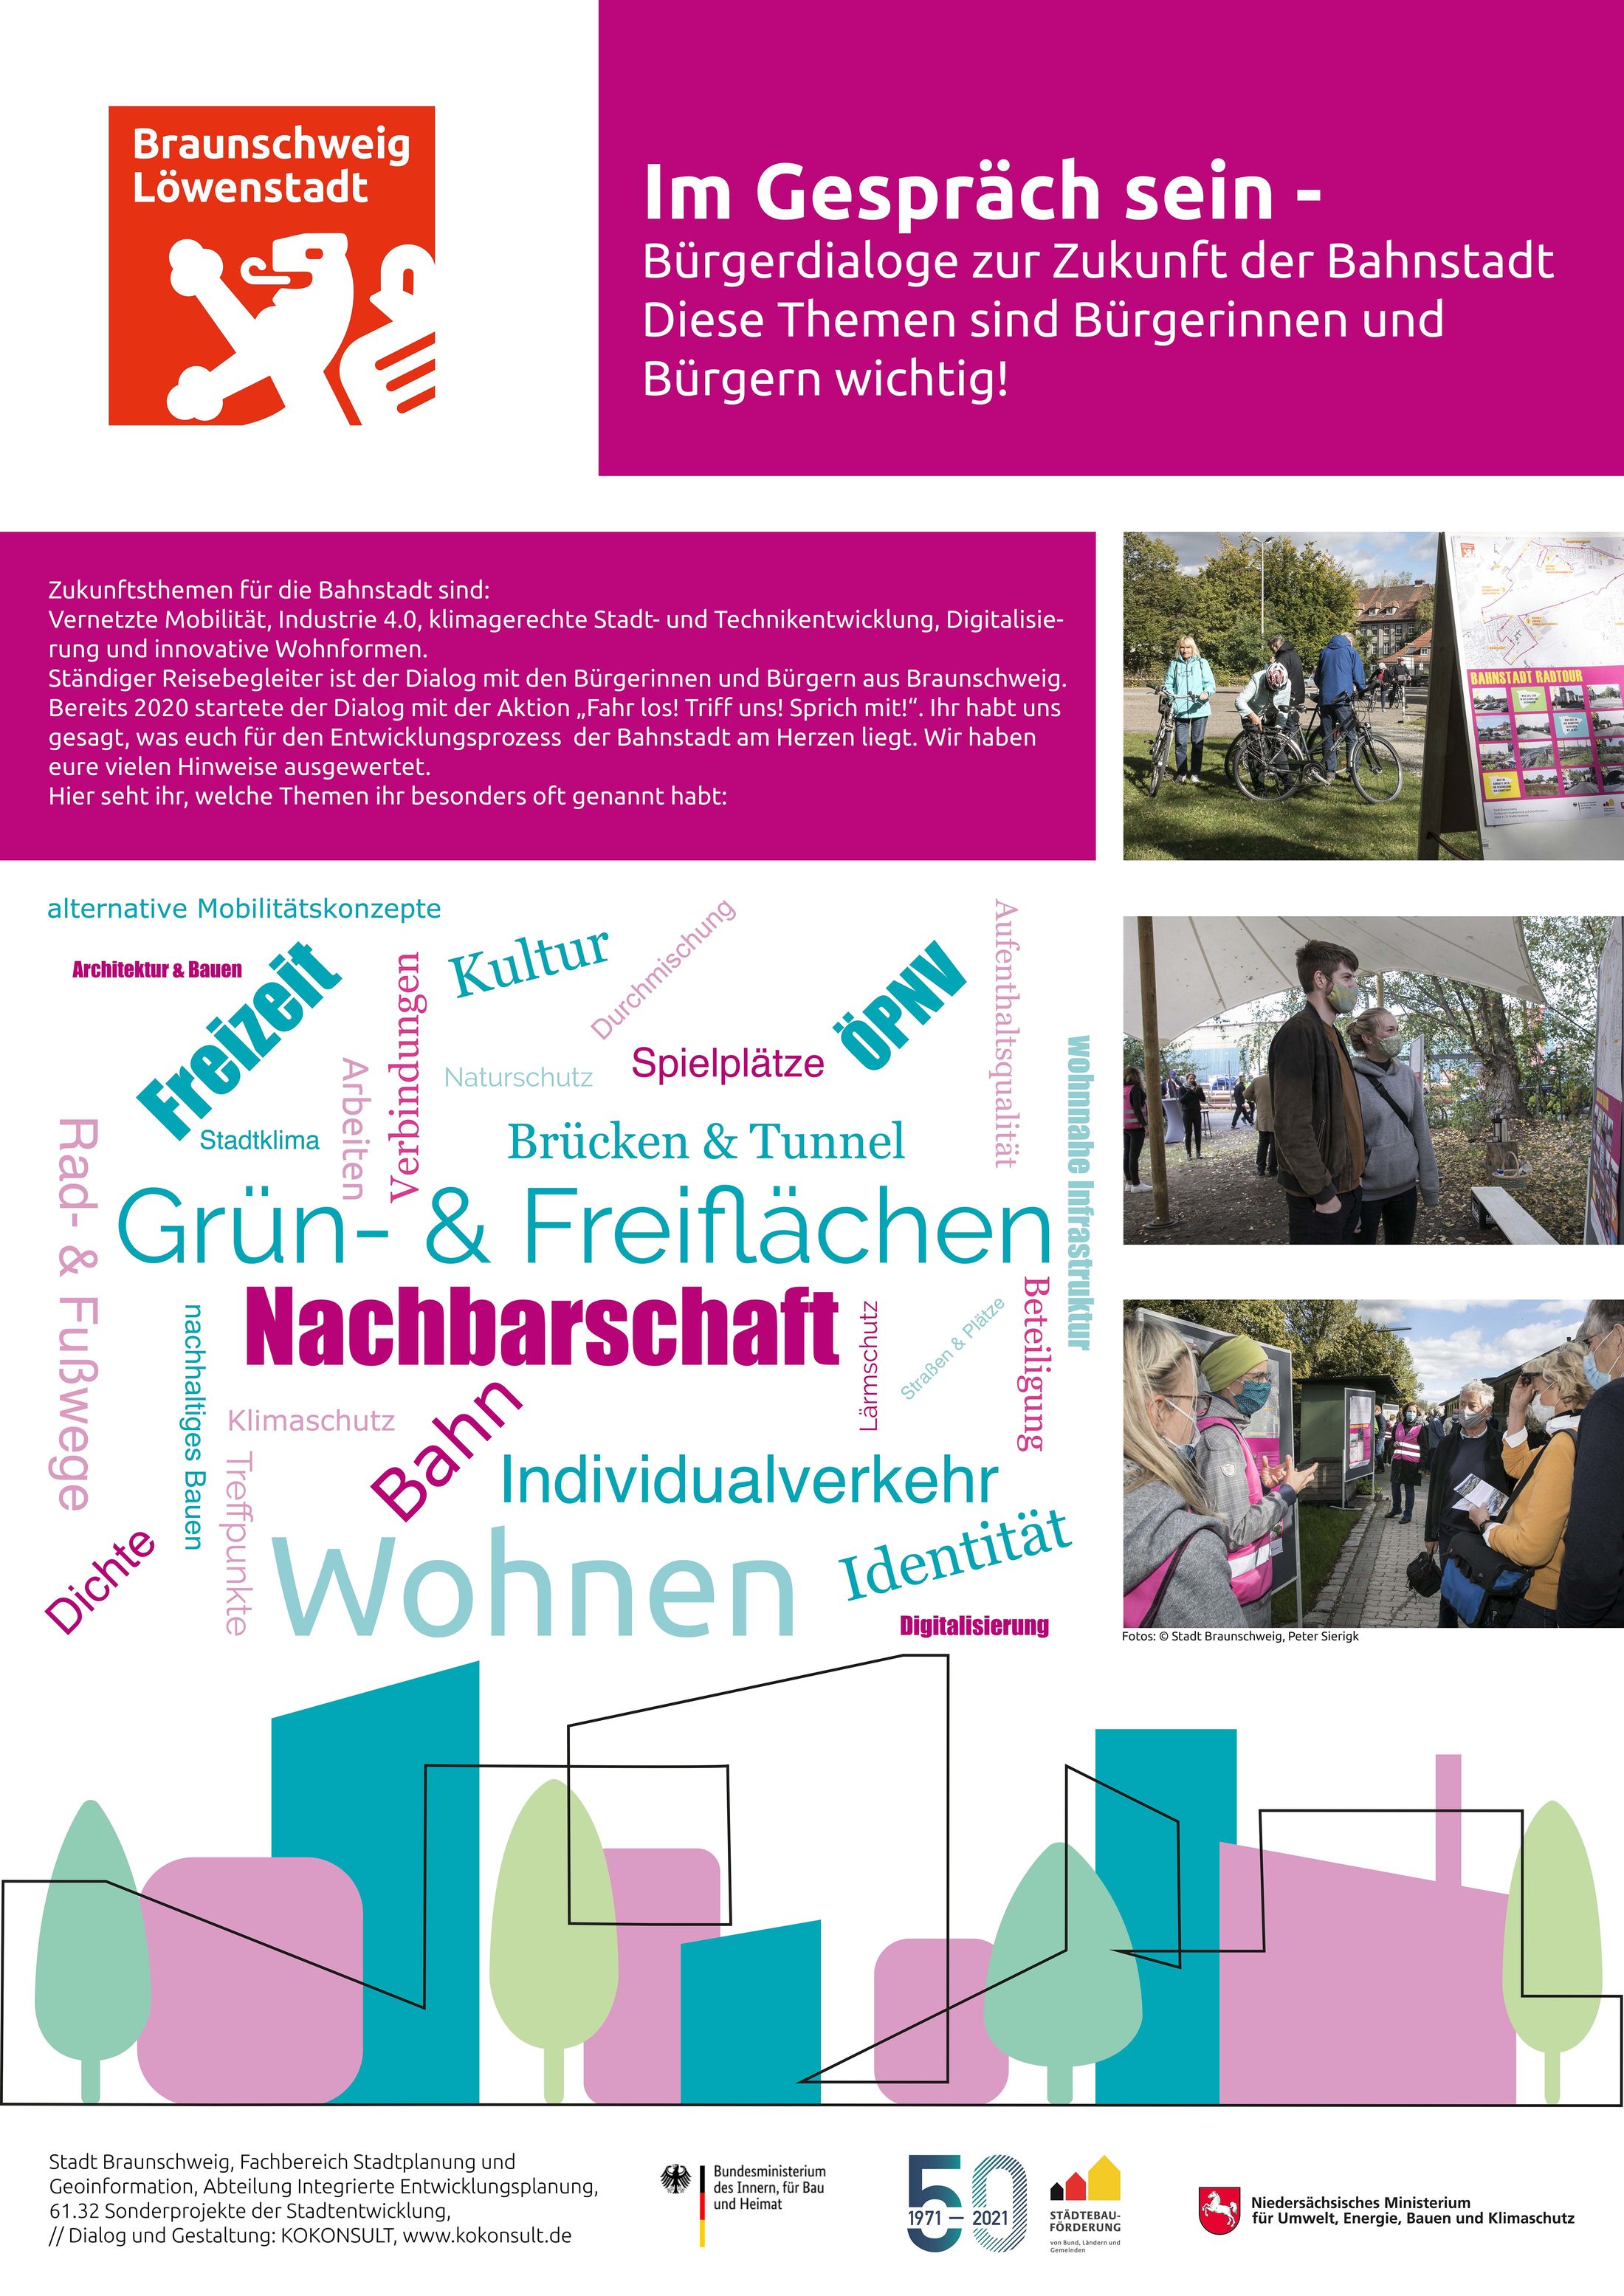 Plakat "Im Gespräch sein - Bürgerdialoge zur Zukunft der Bahnstadt - Diese Themen sind Bürgerinnen und Bürgern wichtig!"